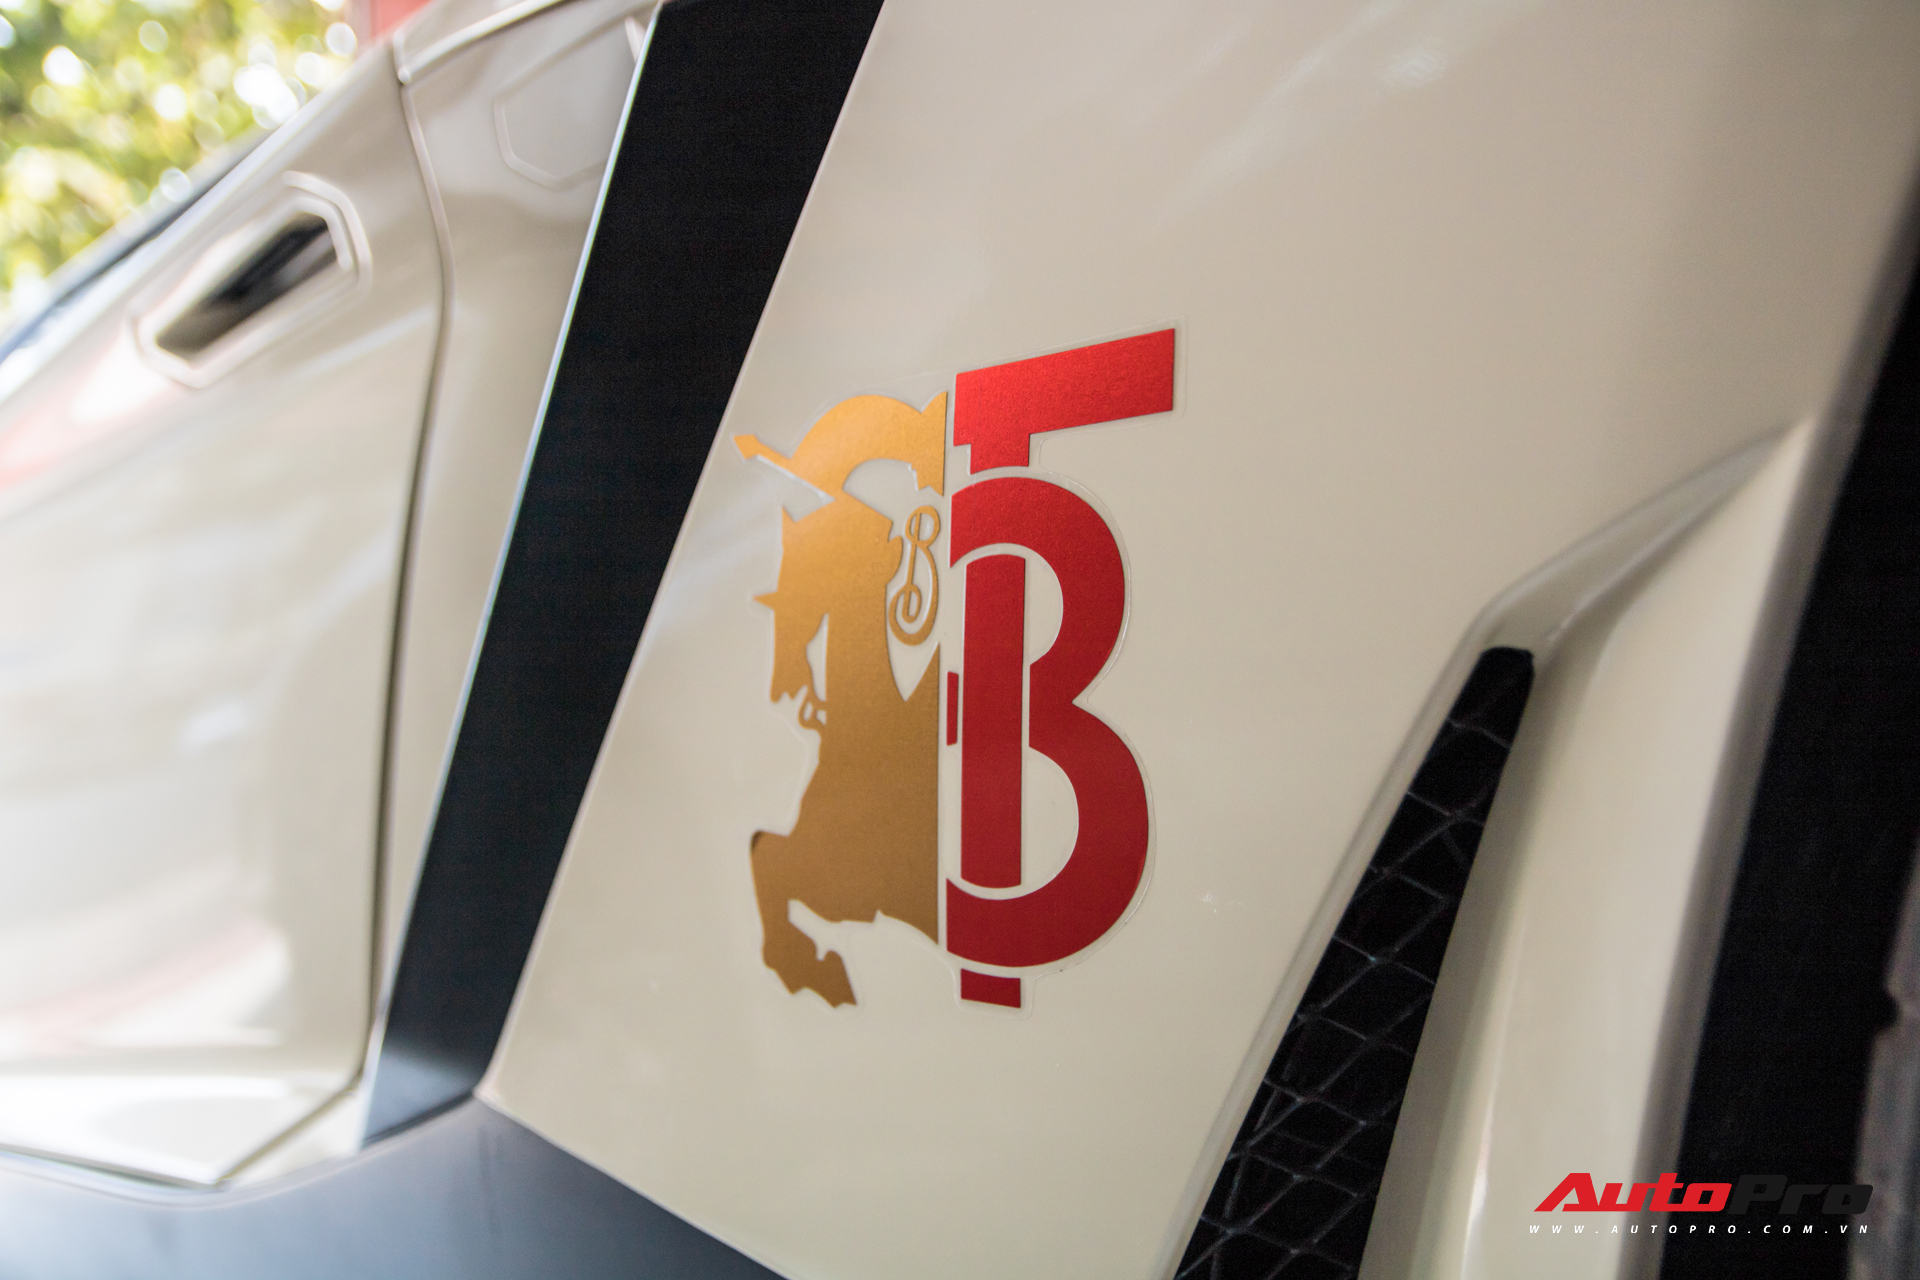 Đại gia Bạc Liêu tiếp tục lột xác Lamborghini Aventador độ phiên bản kỷ niệm 50 năm theo phong cách hãng thời trang đình đám - Ảnh 7.